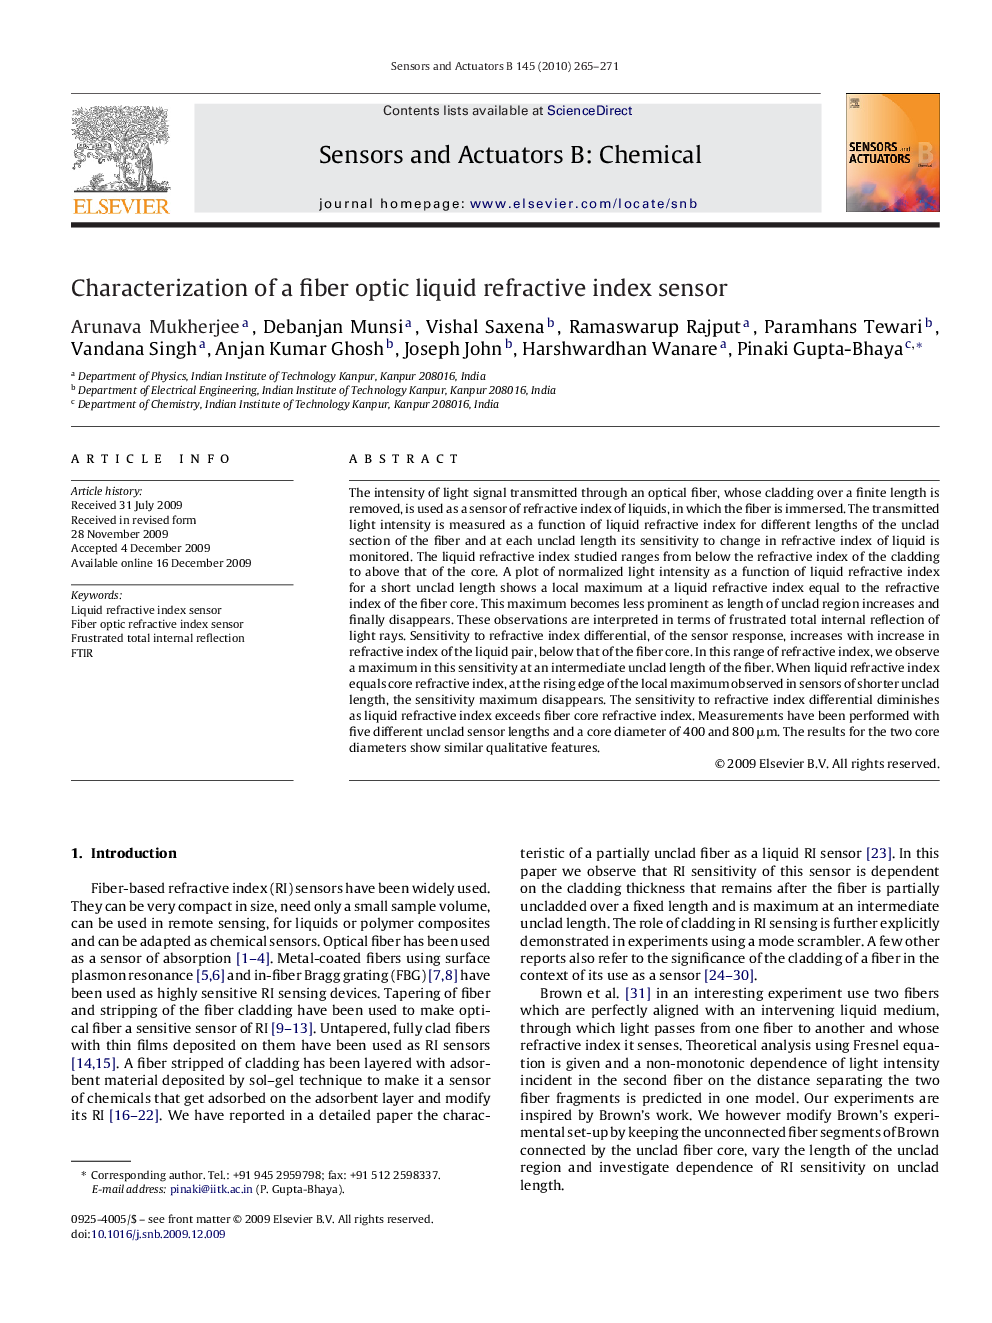 Characterization of a fiber optic liquid refractive index sensor